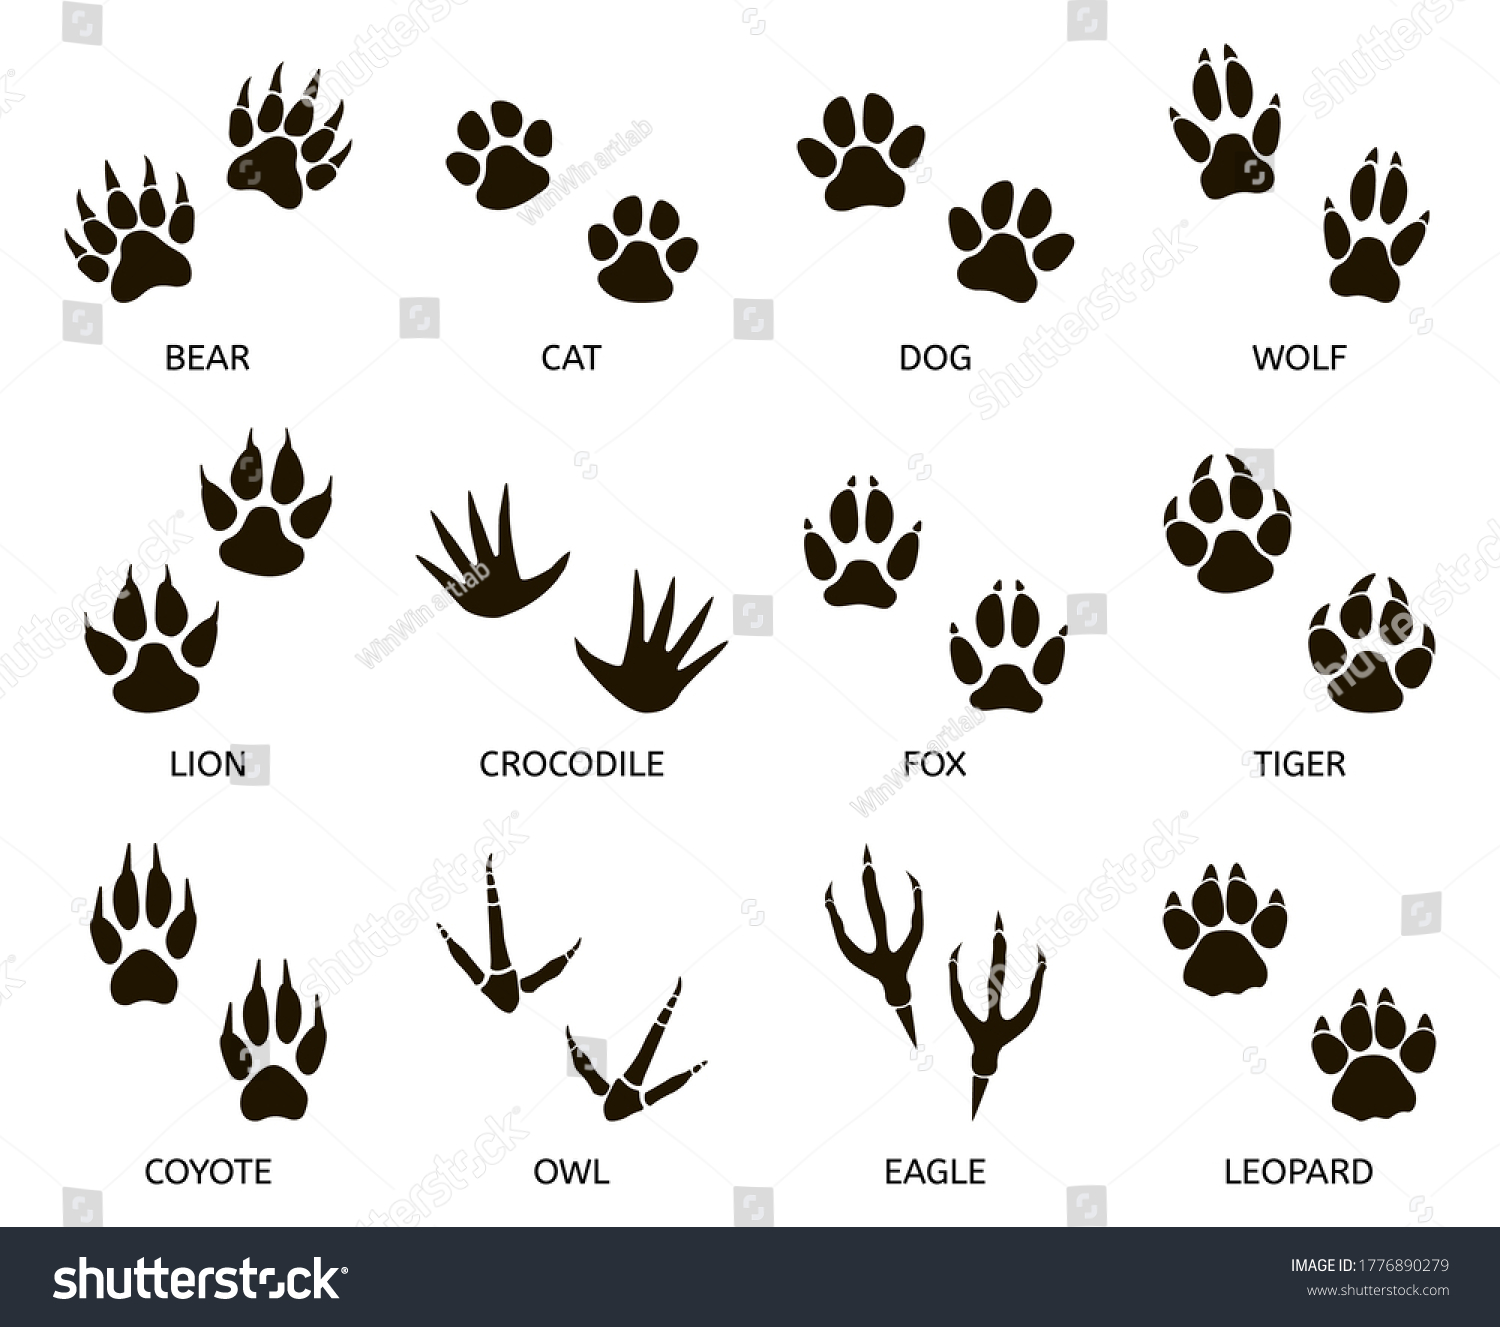 捕食者の足跡 野生動物の足跡 猫 熊 虎 狐 狼の足跡 捕食者の足跡シルエットイラストセット 哺乳類の足跡 動物の痕跡 捕食者の危険性 のイラスト素材 Shutterstock